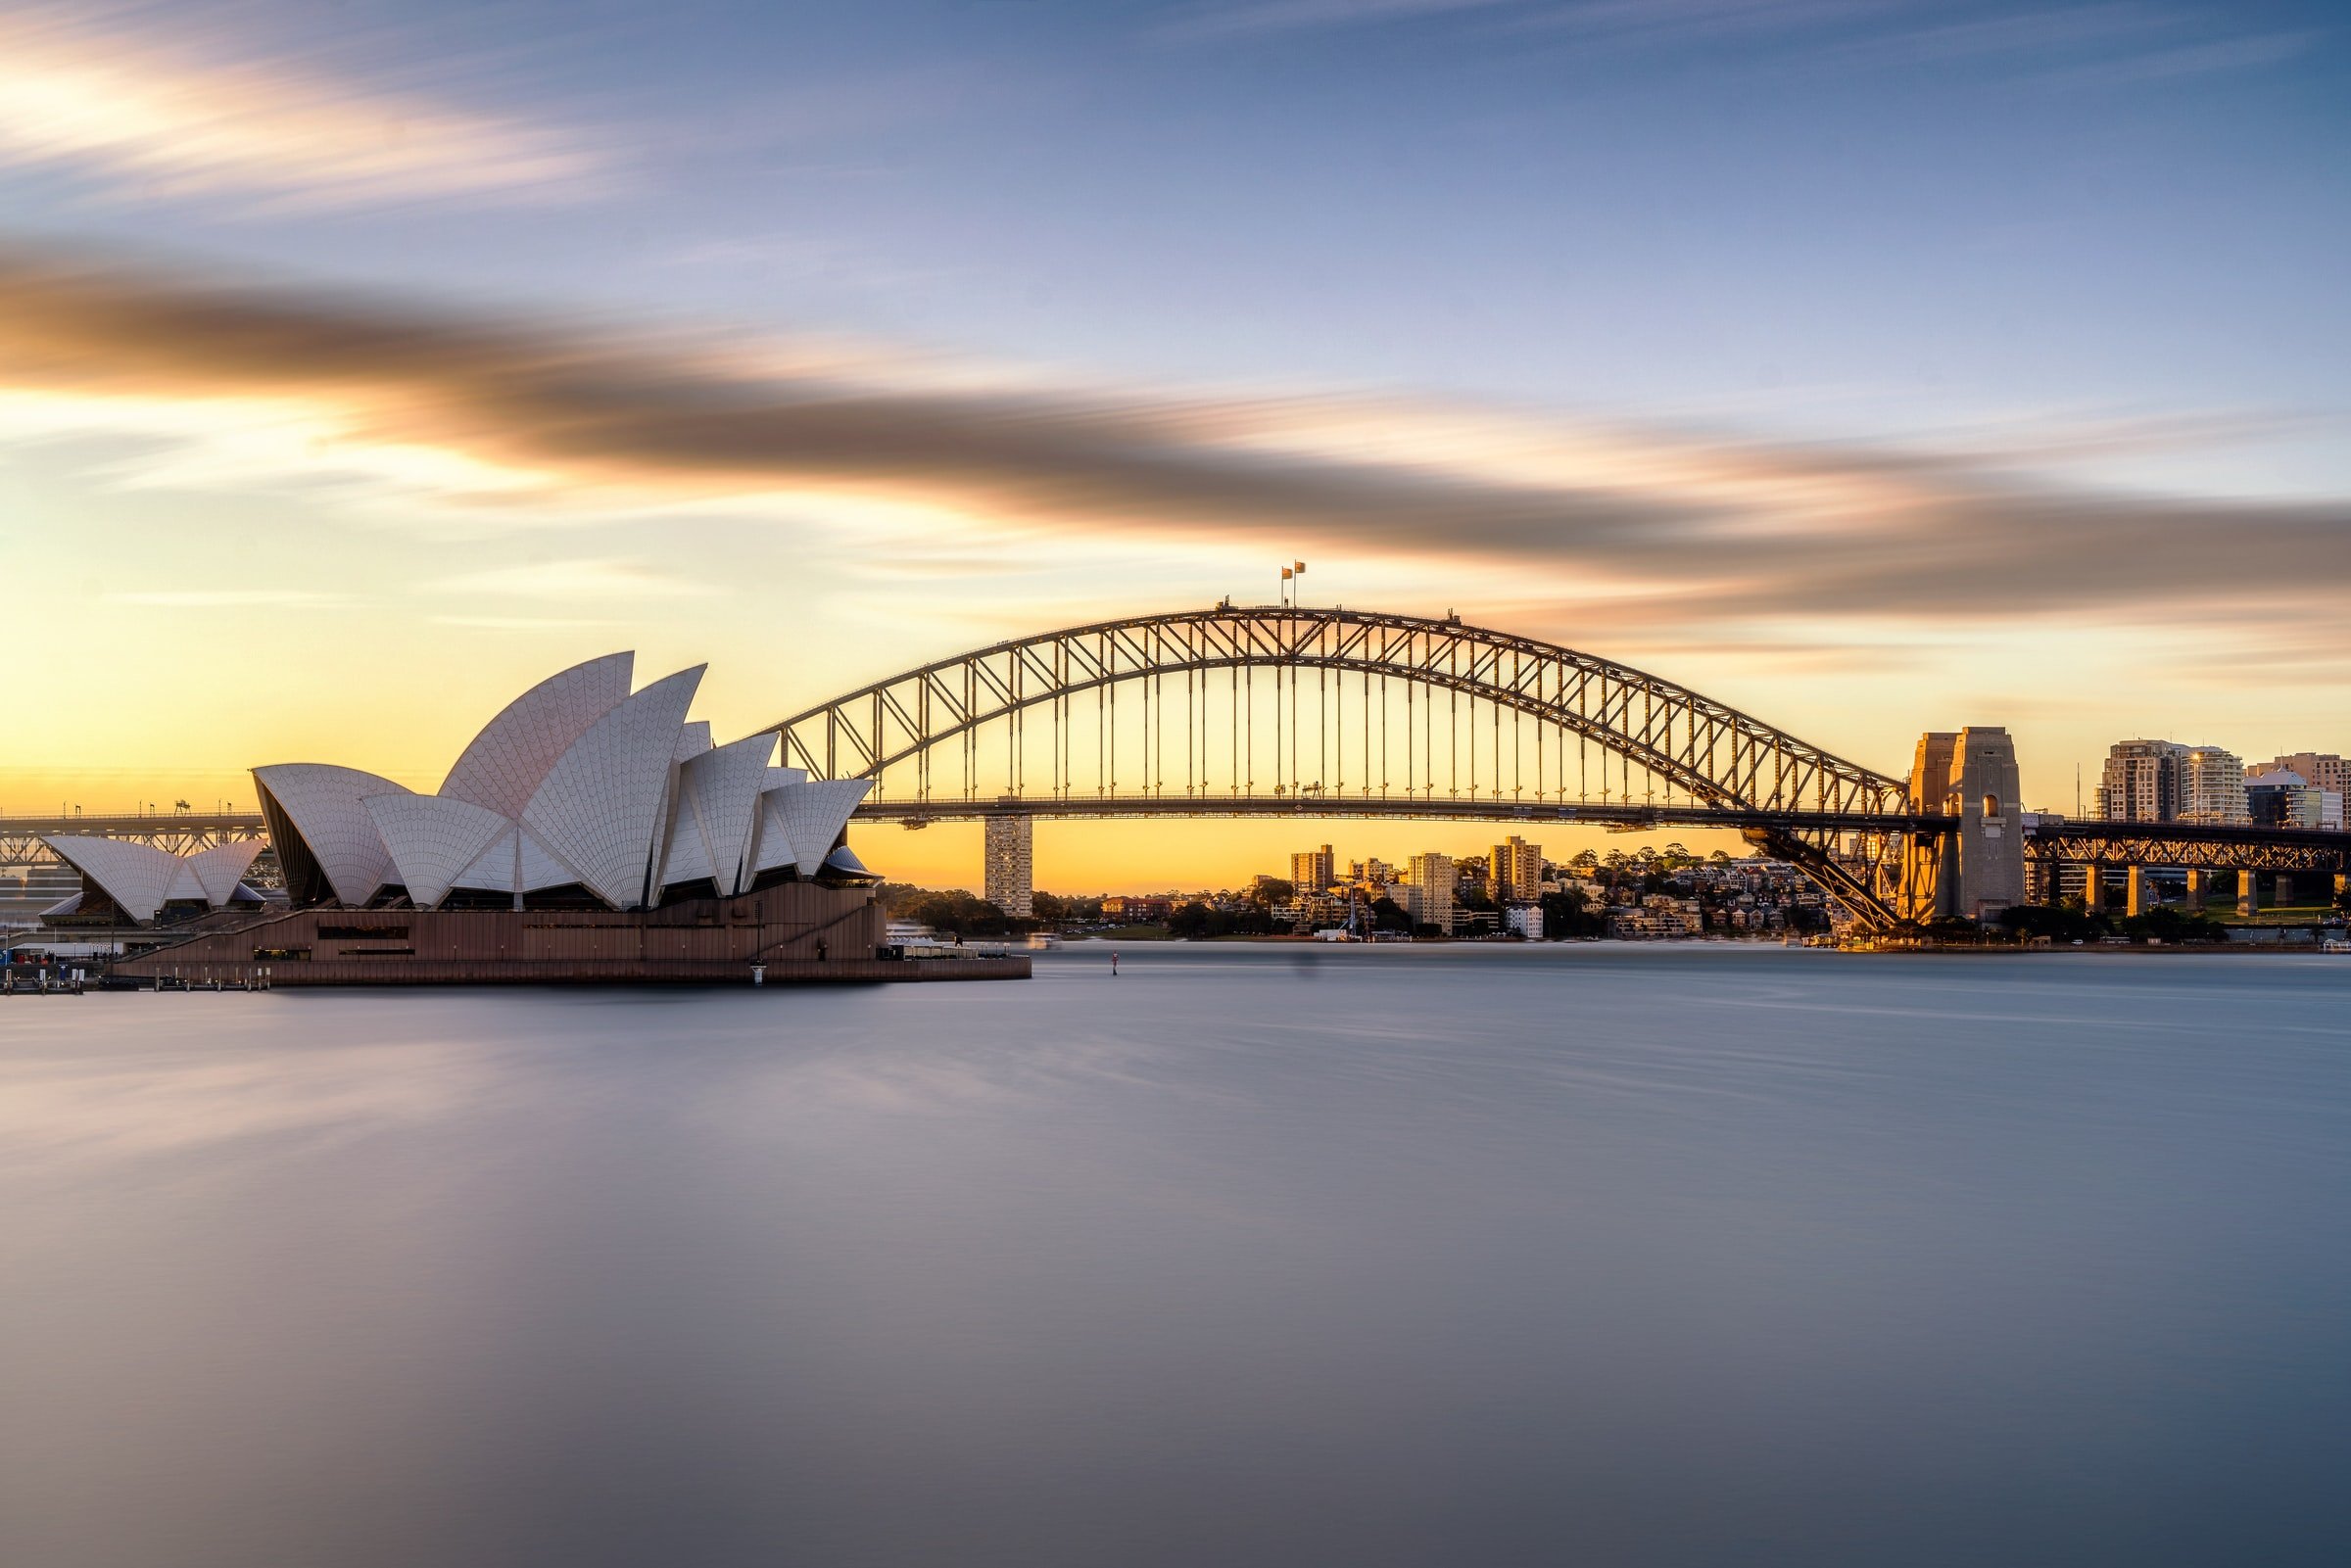 Harbour bridge. Сиднейский Харбор-бридж. Сиднейский мост Харбор-бридж. Мост Харбор в Сиднее и опера. Сиднейский оперный театр и мост Харбор-бридж.